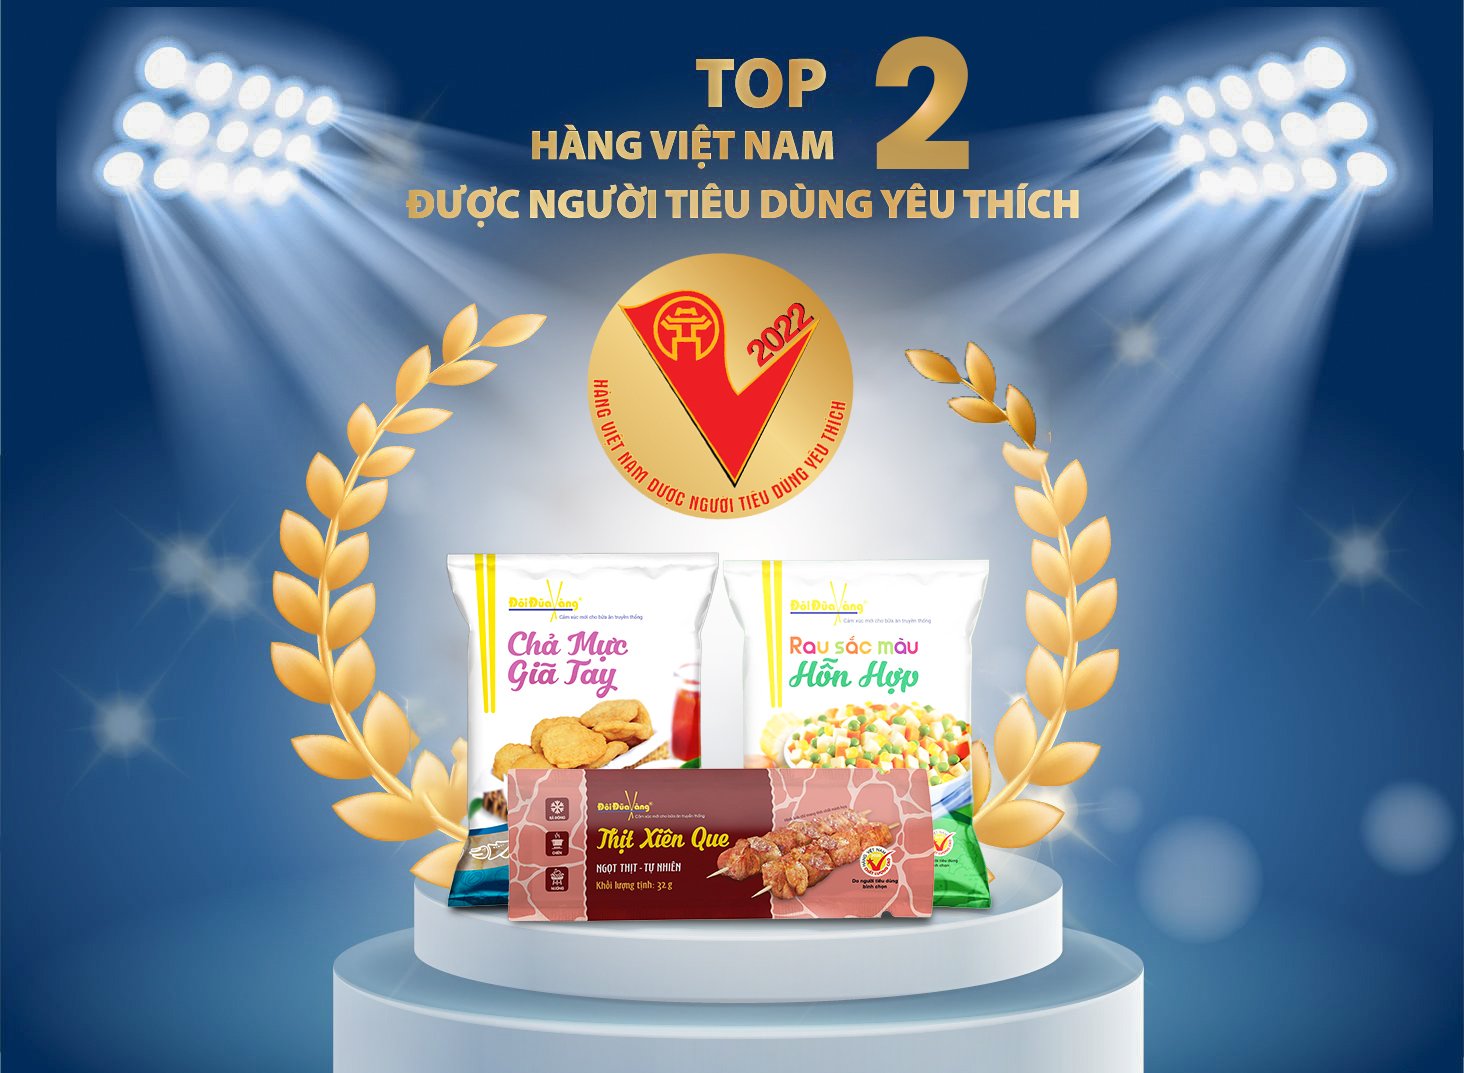 Top 2 hàng tiêu dùng người Việt Nam yêu thích